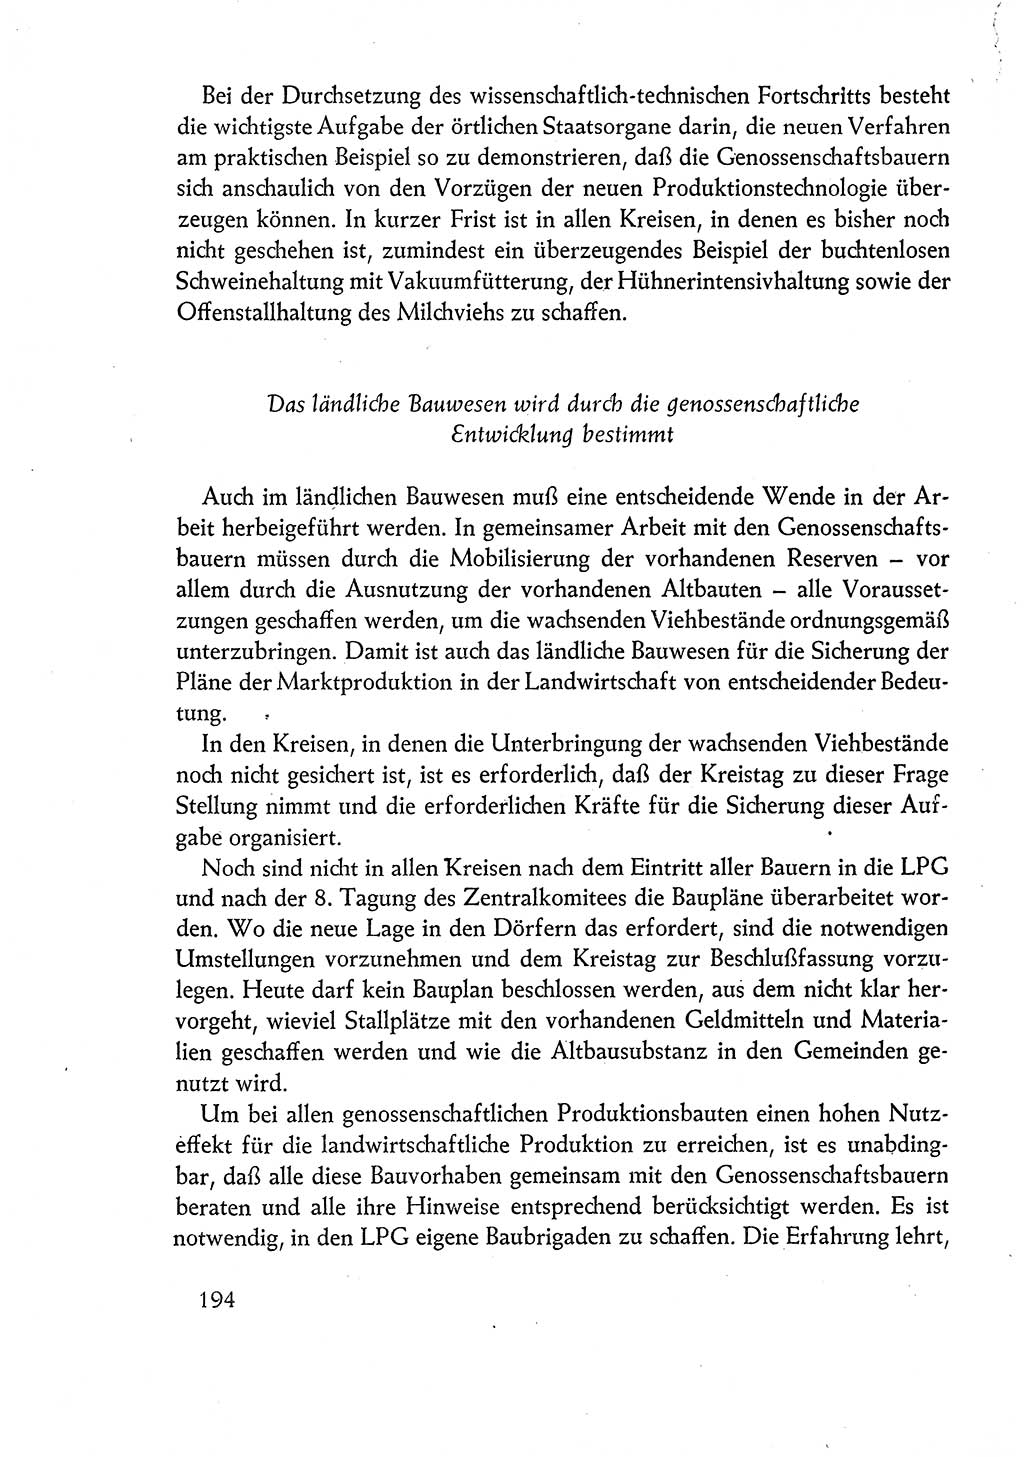 Dokumente der Sozialistischen Einheitspartei Deutschlands (SED) [Deutsche Demokratische Republik (DDR)] 1960-1961, Seite 194 (Dok. SED DDR 1960-1961, S. 194)